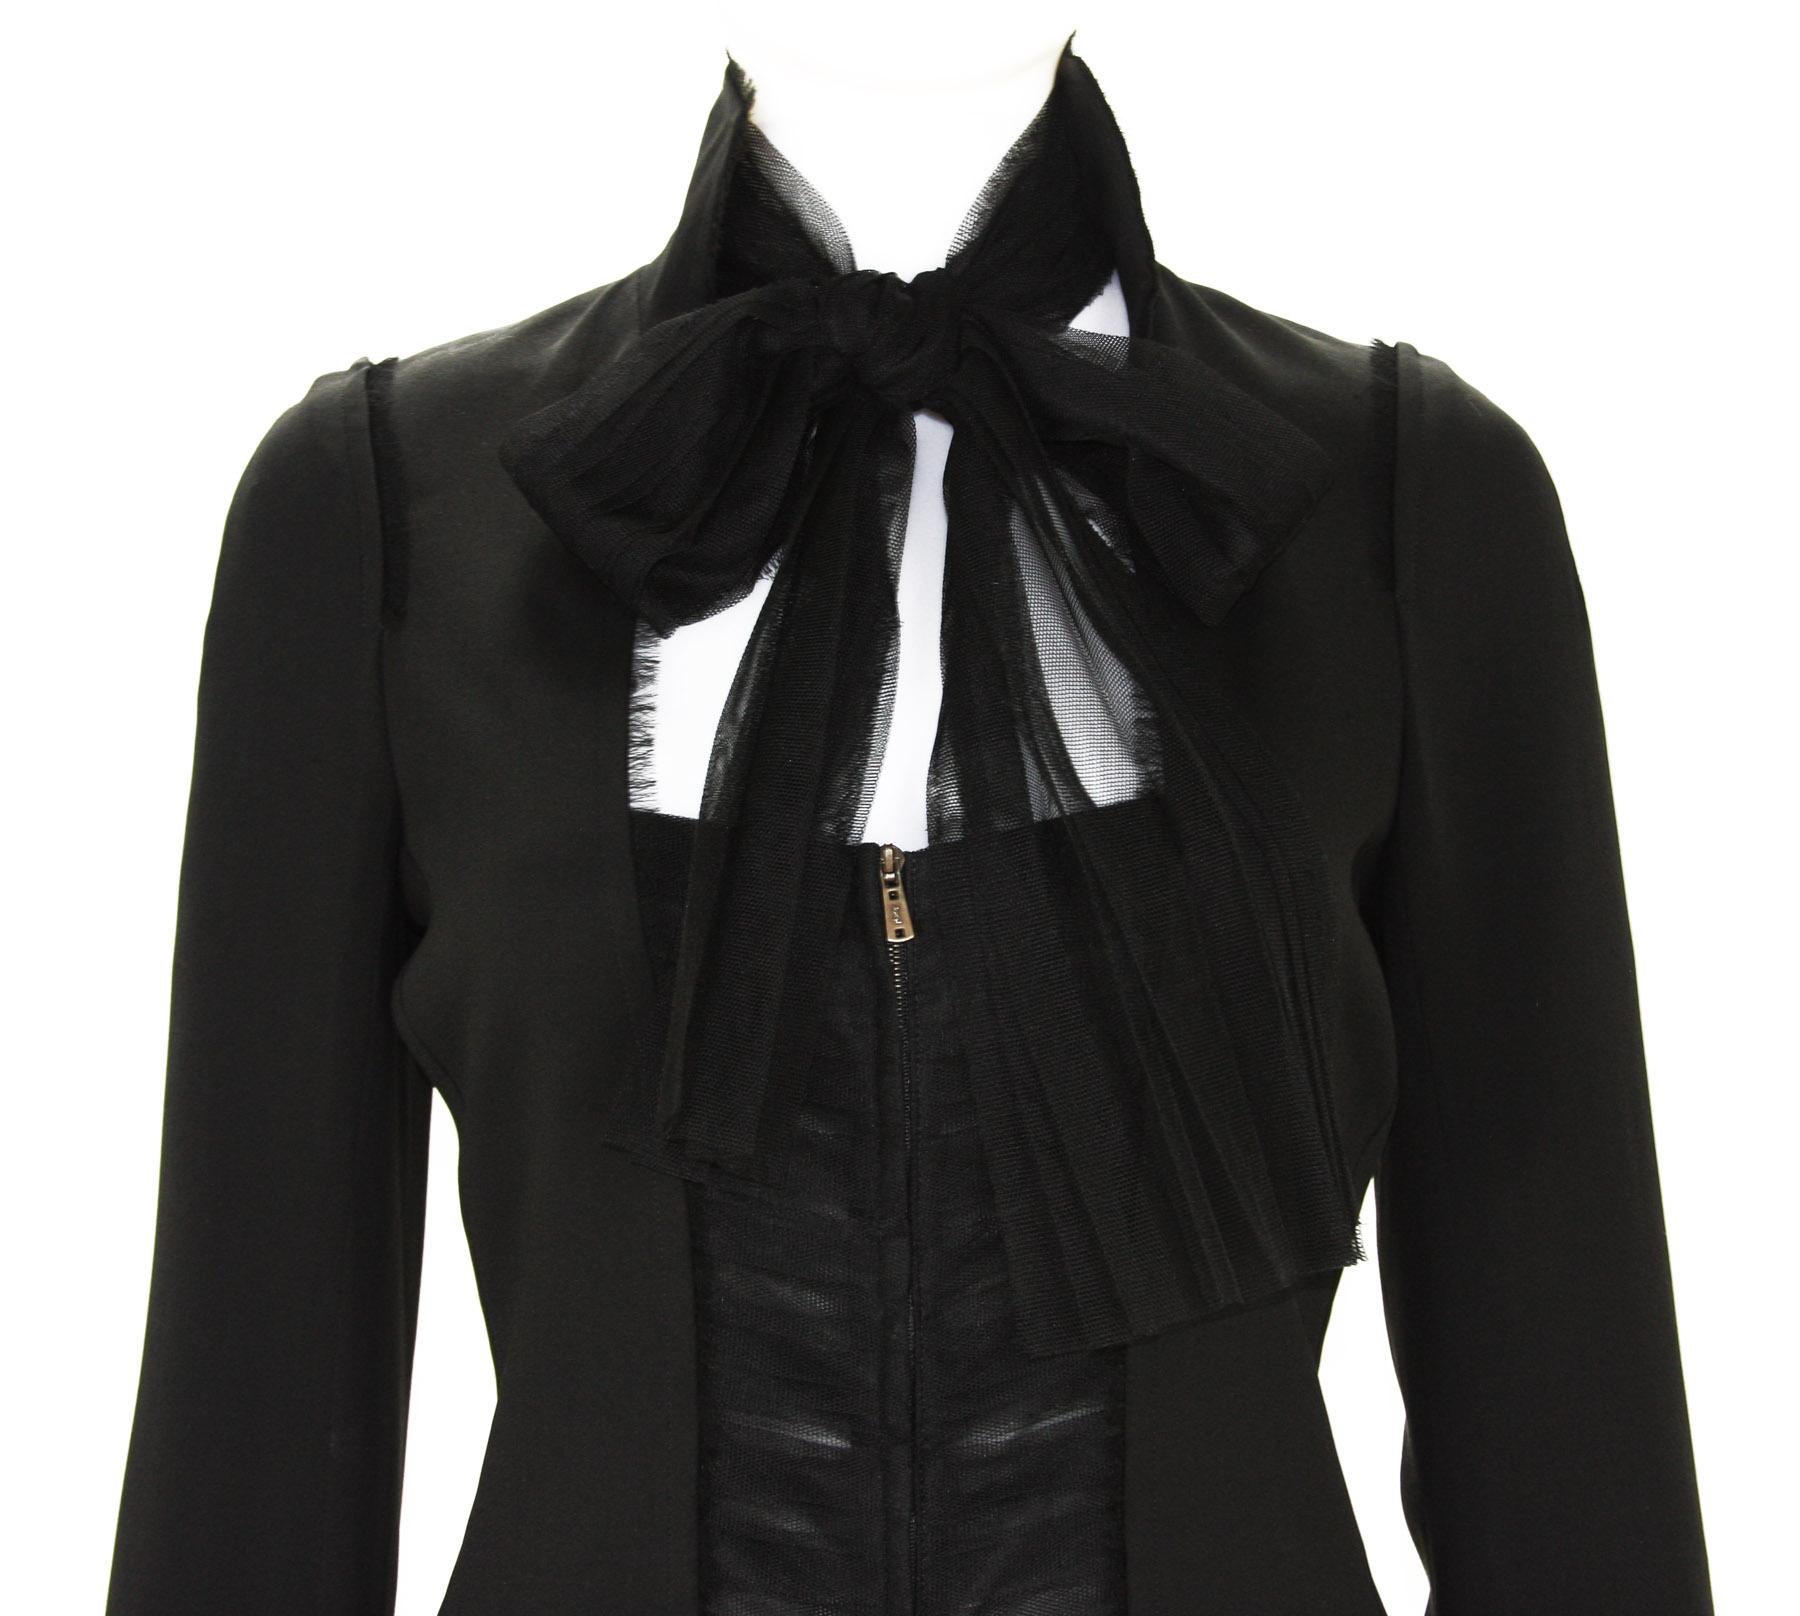 Tom Ford for Yves Saint Laurent F/W 2002 Black Silk Tulle Jacket Blazer 36, 38  5